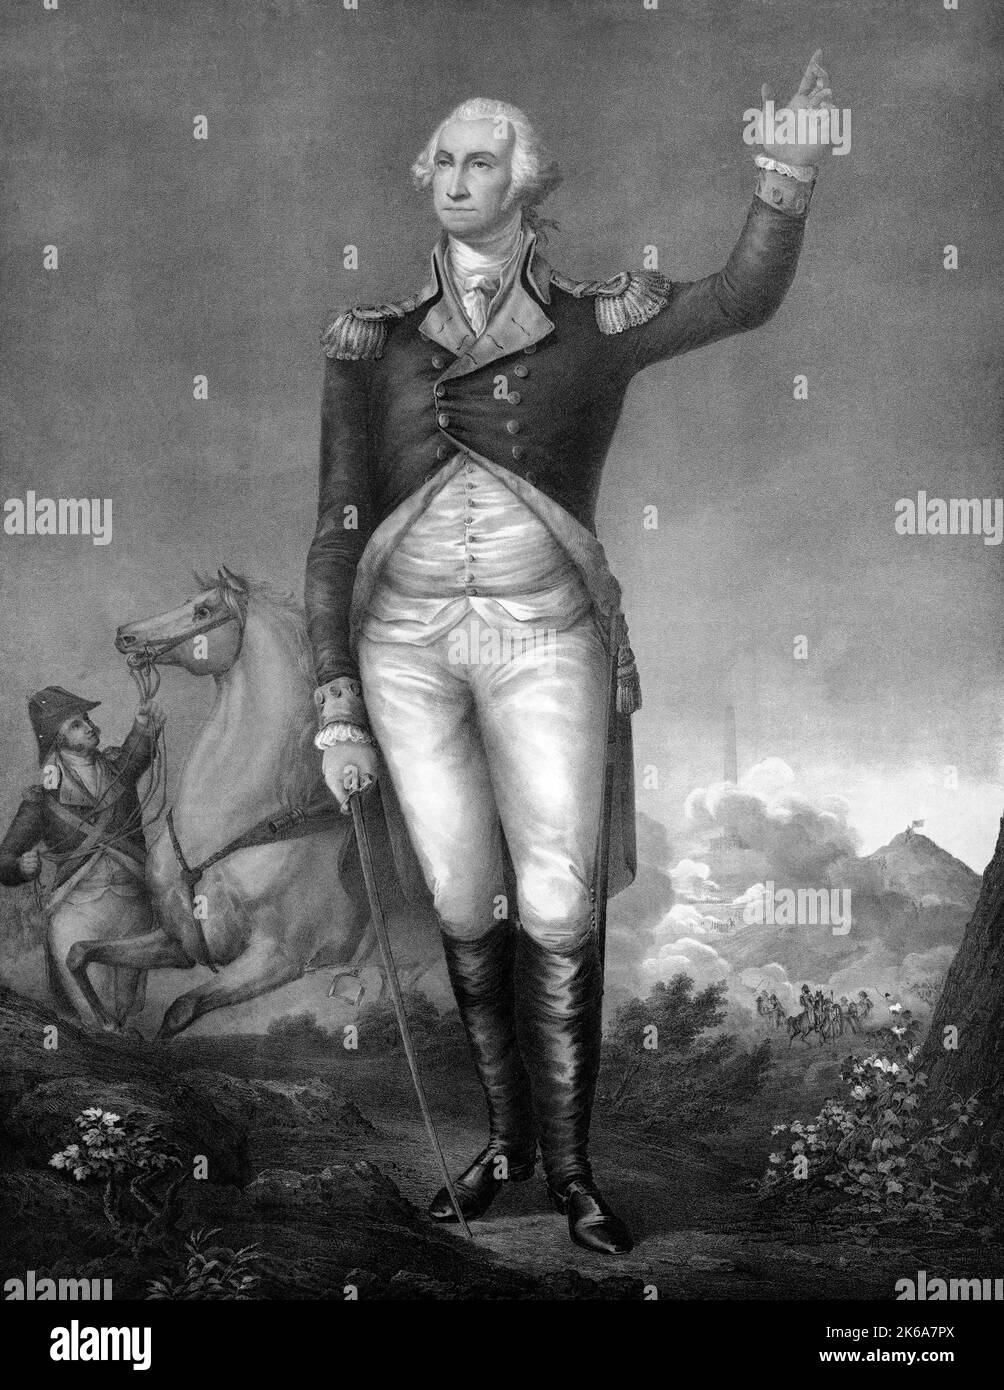 Litografia di George Washington in uniforme durante la guerra rivoluzionaria americana. Foto Stock